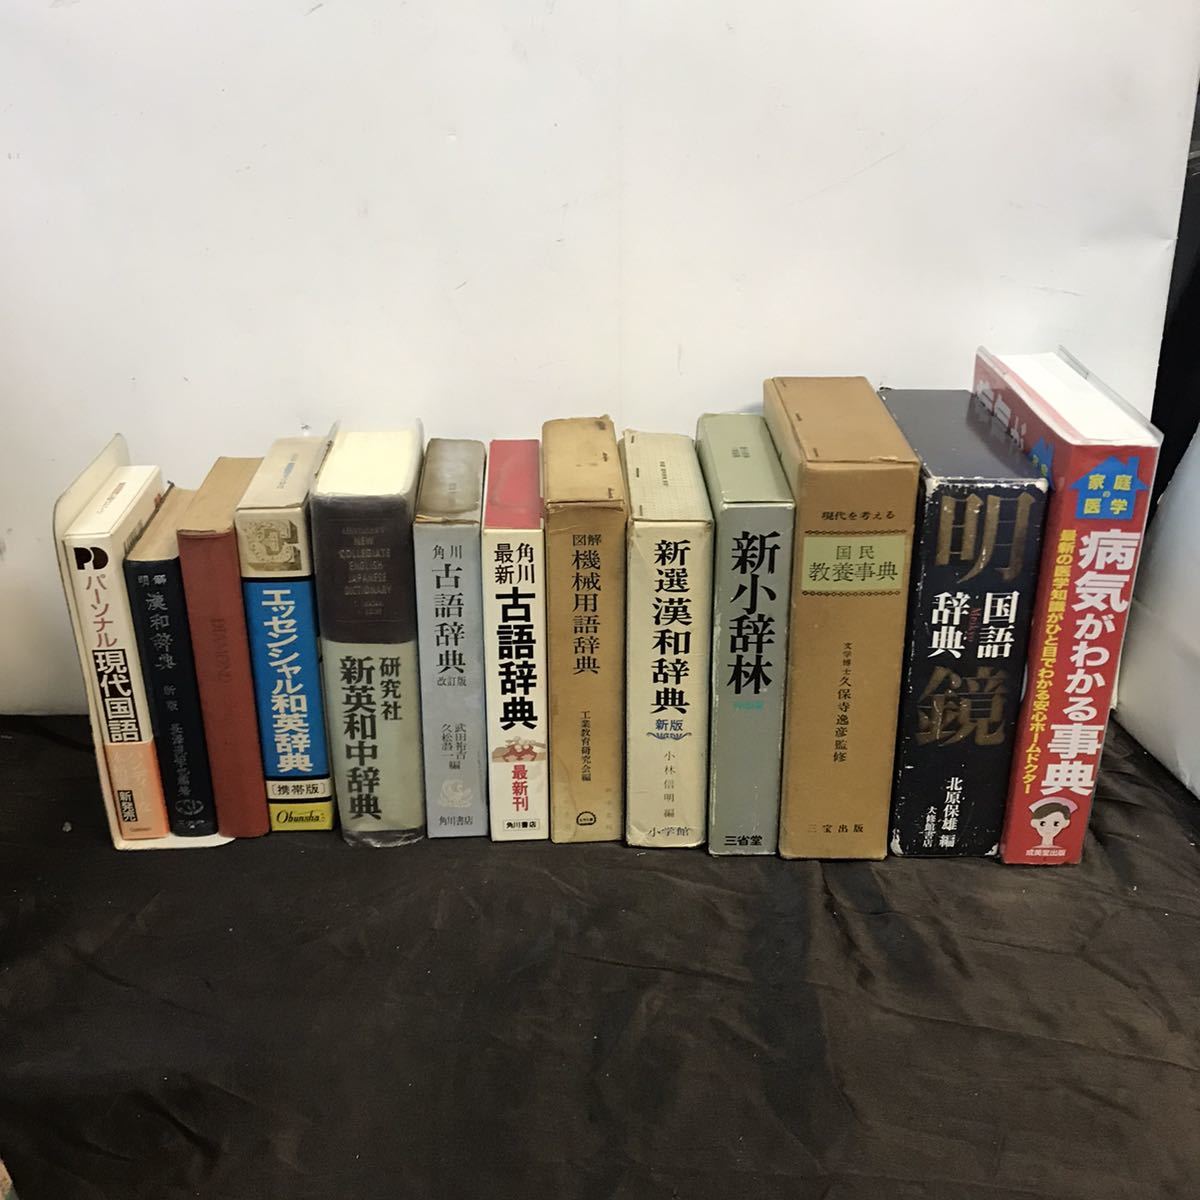 Словарь 13 Книги Британский английский язык китайский японский древний язык